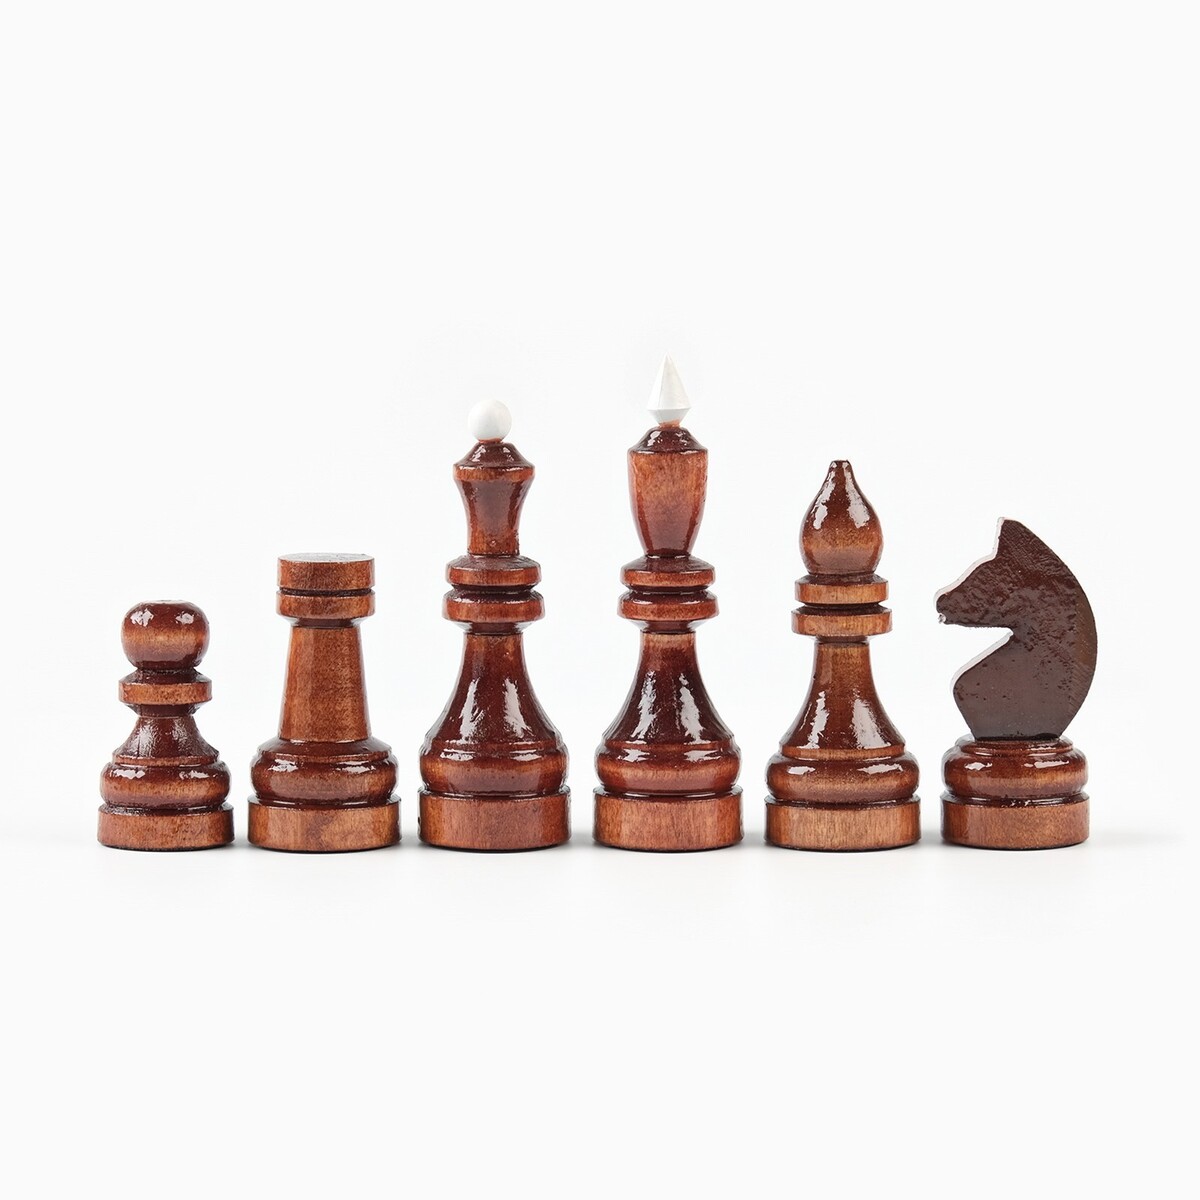 фото Шахматы деревянные гроссмейстерские, турнирные, король h-10.5 см, пешка h-5.3 см no brand